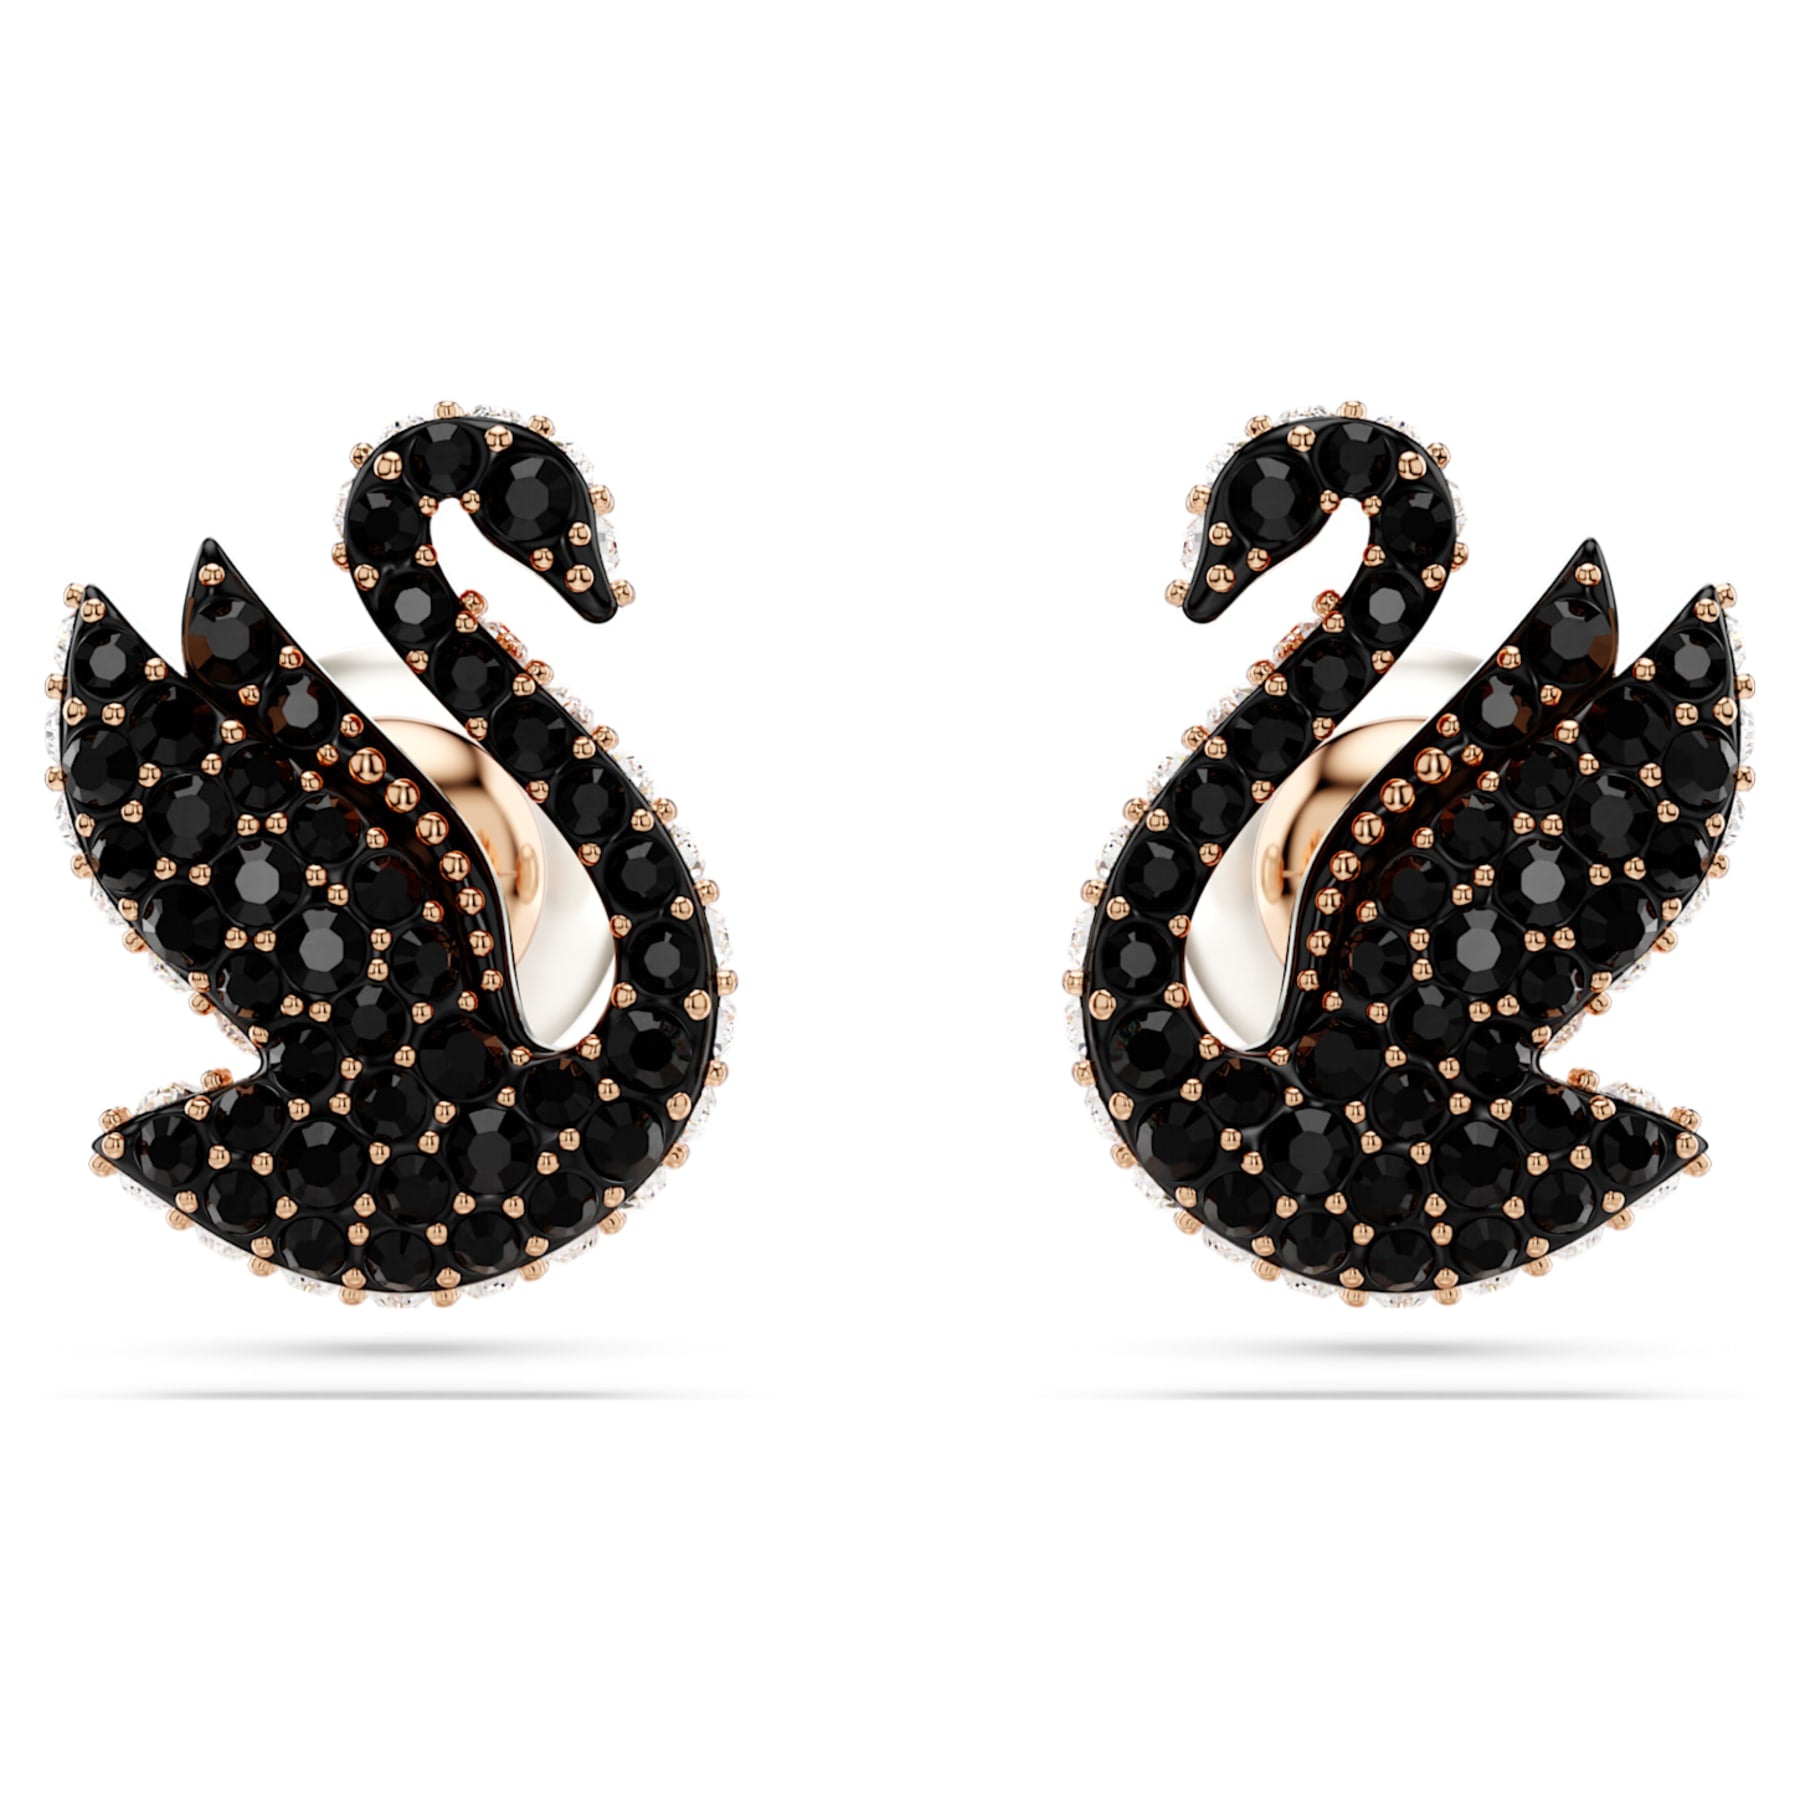 Swan - Black Rose - Stud Earrings - Swarovski